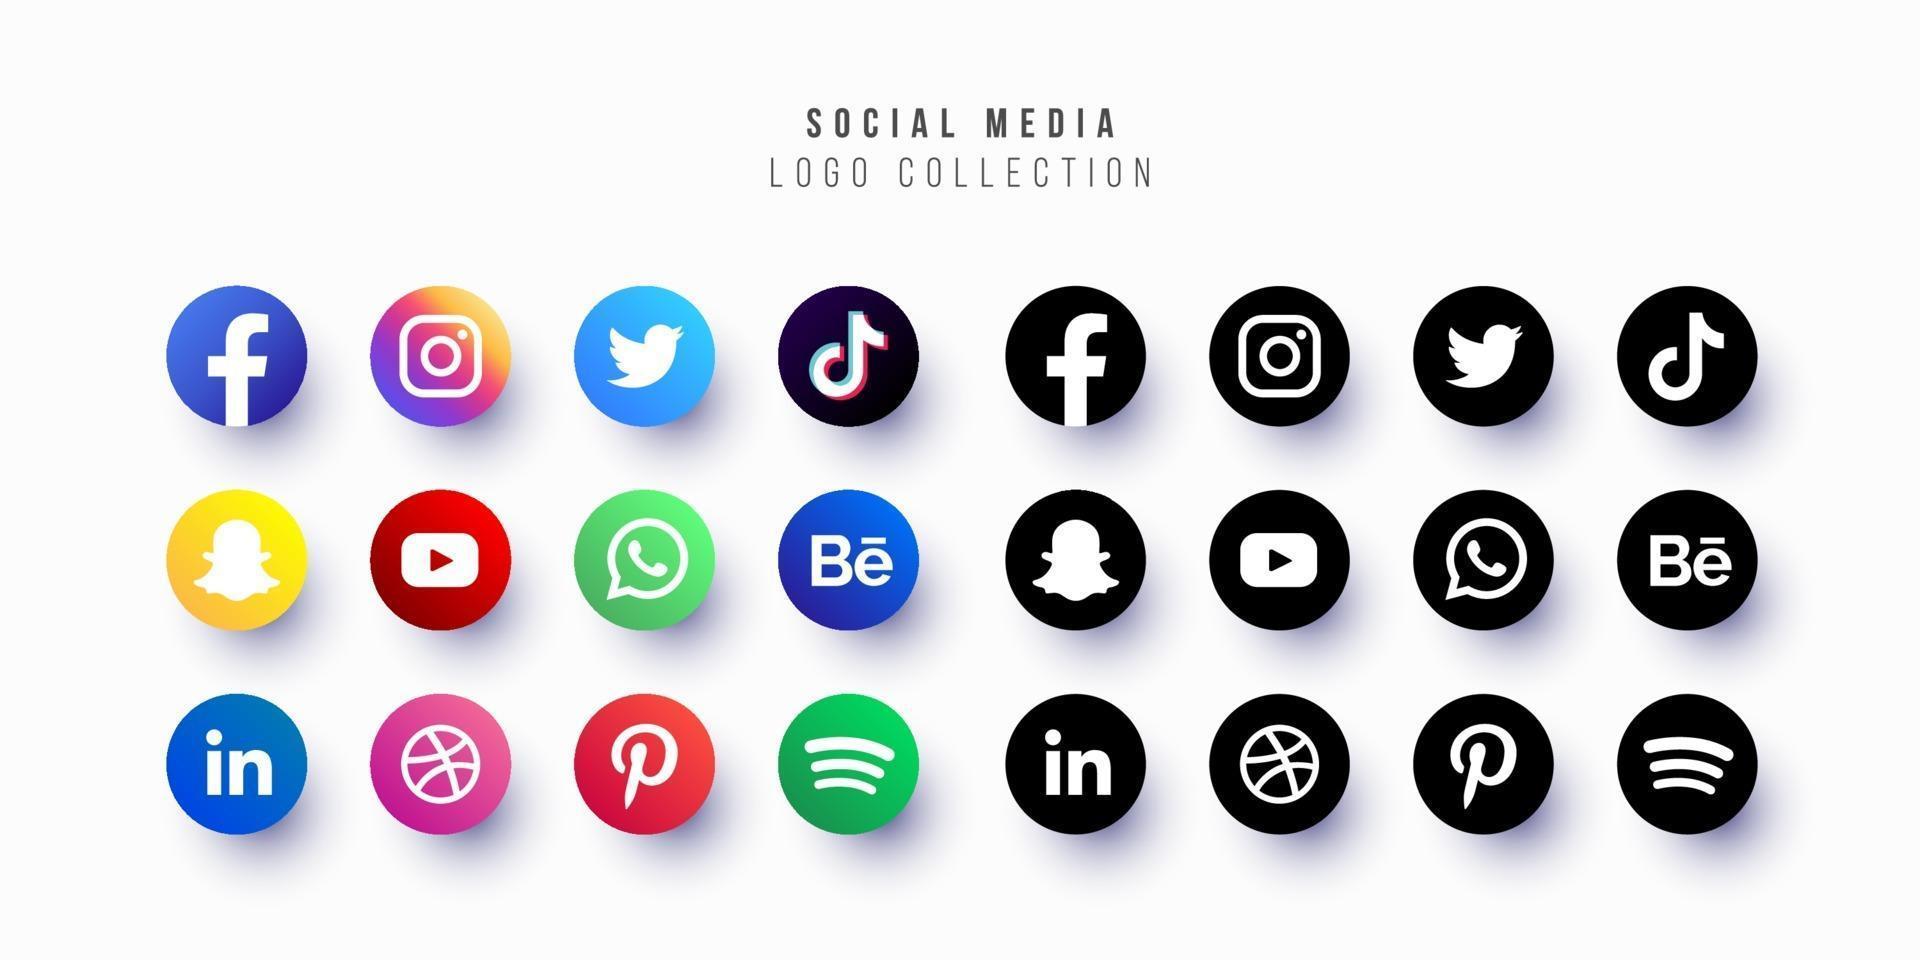 sociale media logo collectie gratis vector ontwerp bewerkbare aanpasbare eps 10